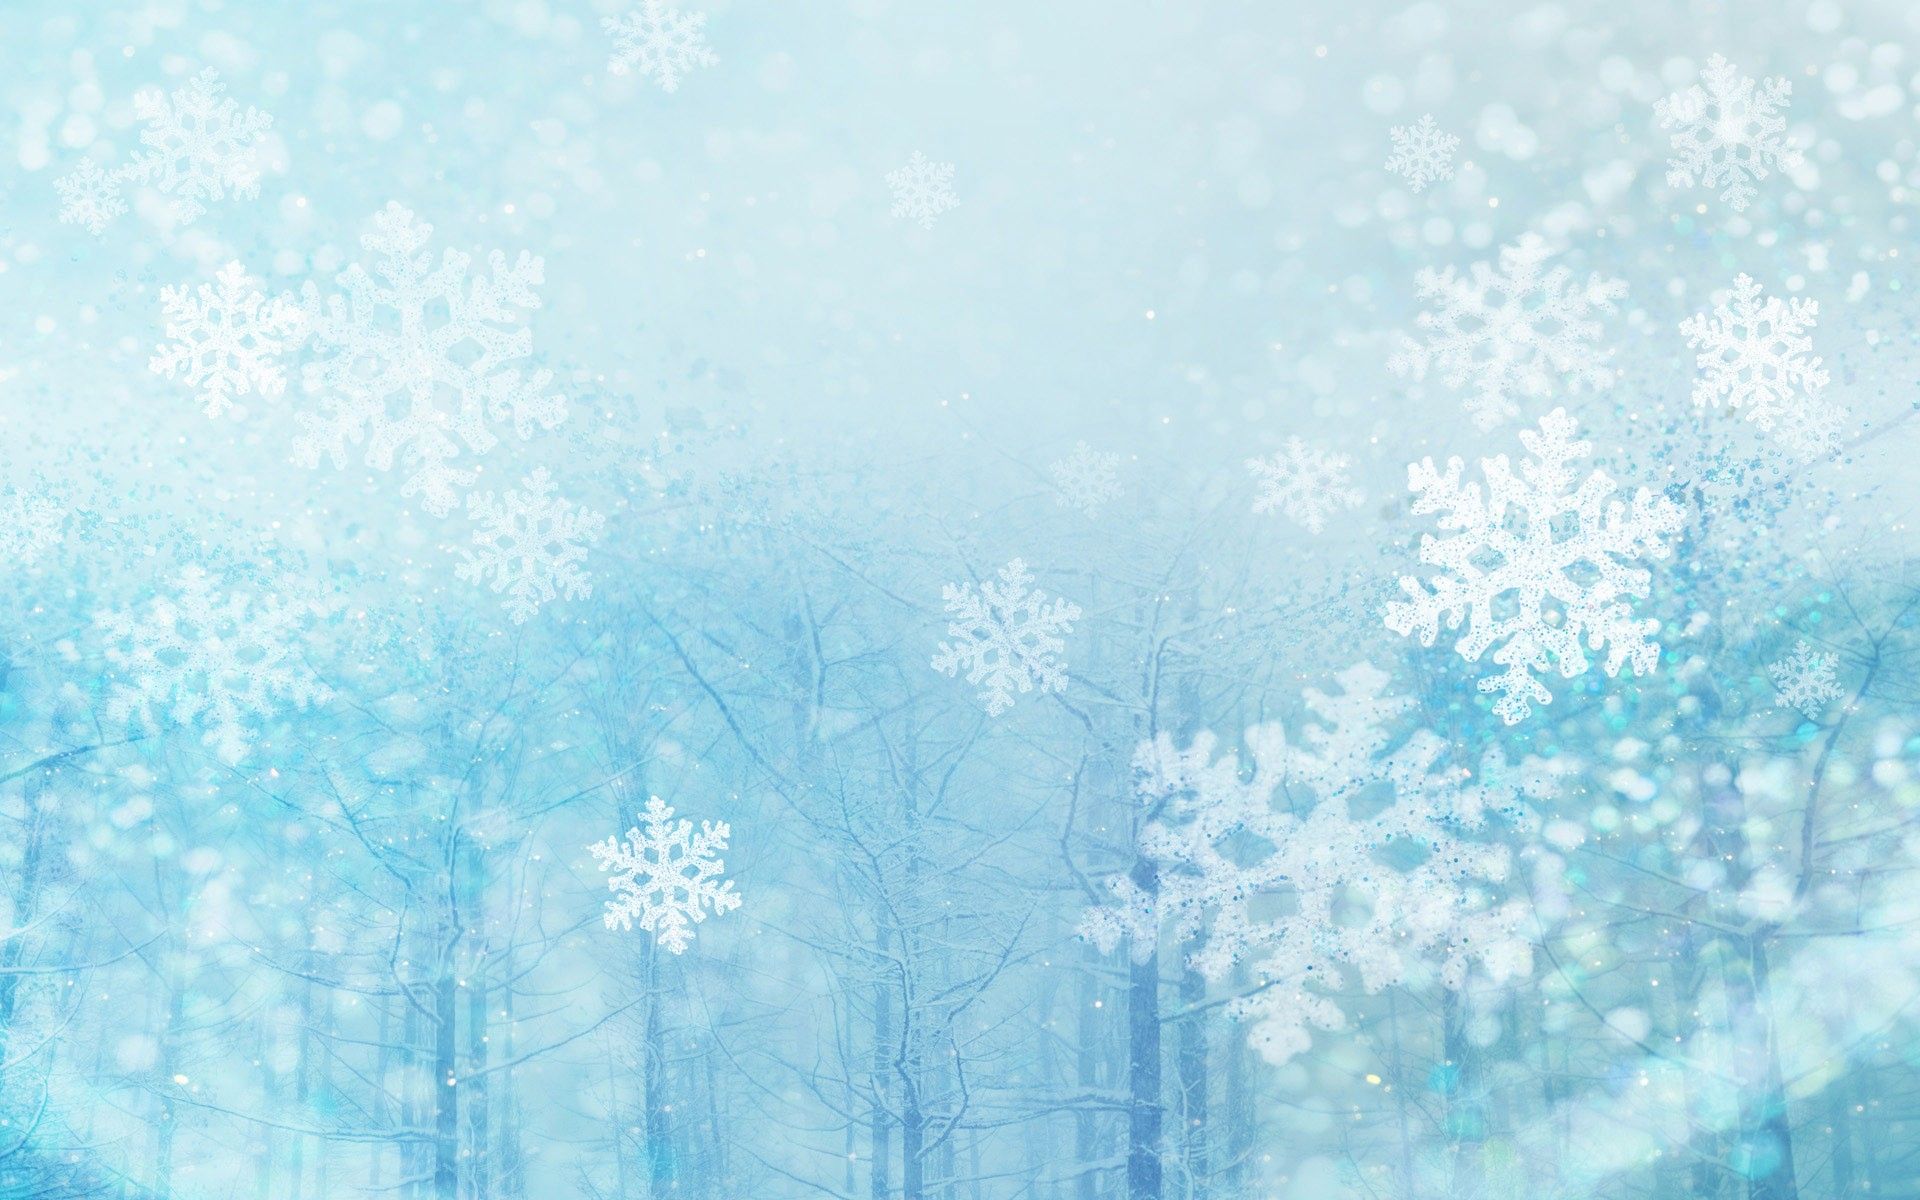 Free download Winter Snow Wallpaper PixelsTalk Snow Desktop Wallpaper 1920x1200 [1920x1200] for your Desktop, Mobile & Tablet. Explore Snow Desktop Wallpaper. Snow Wallpaper For Desktop Free, Free Winter Snow